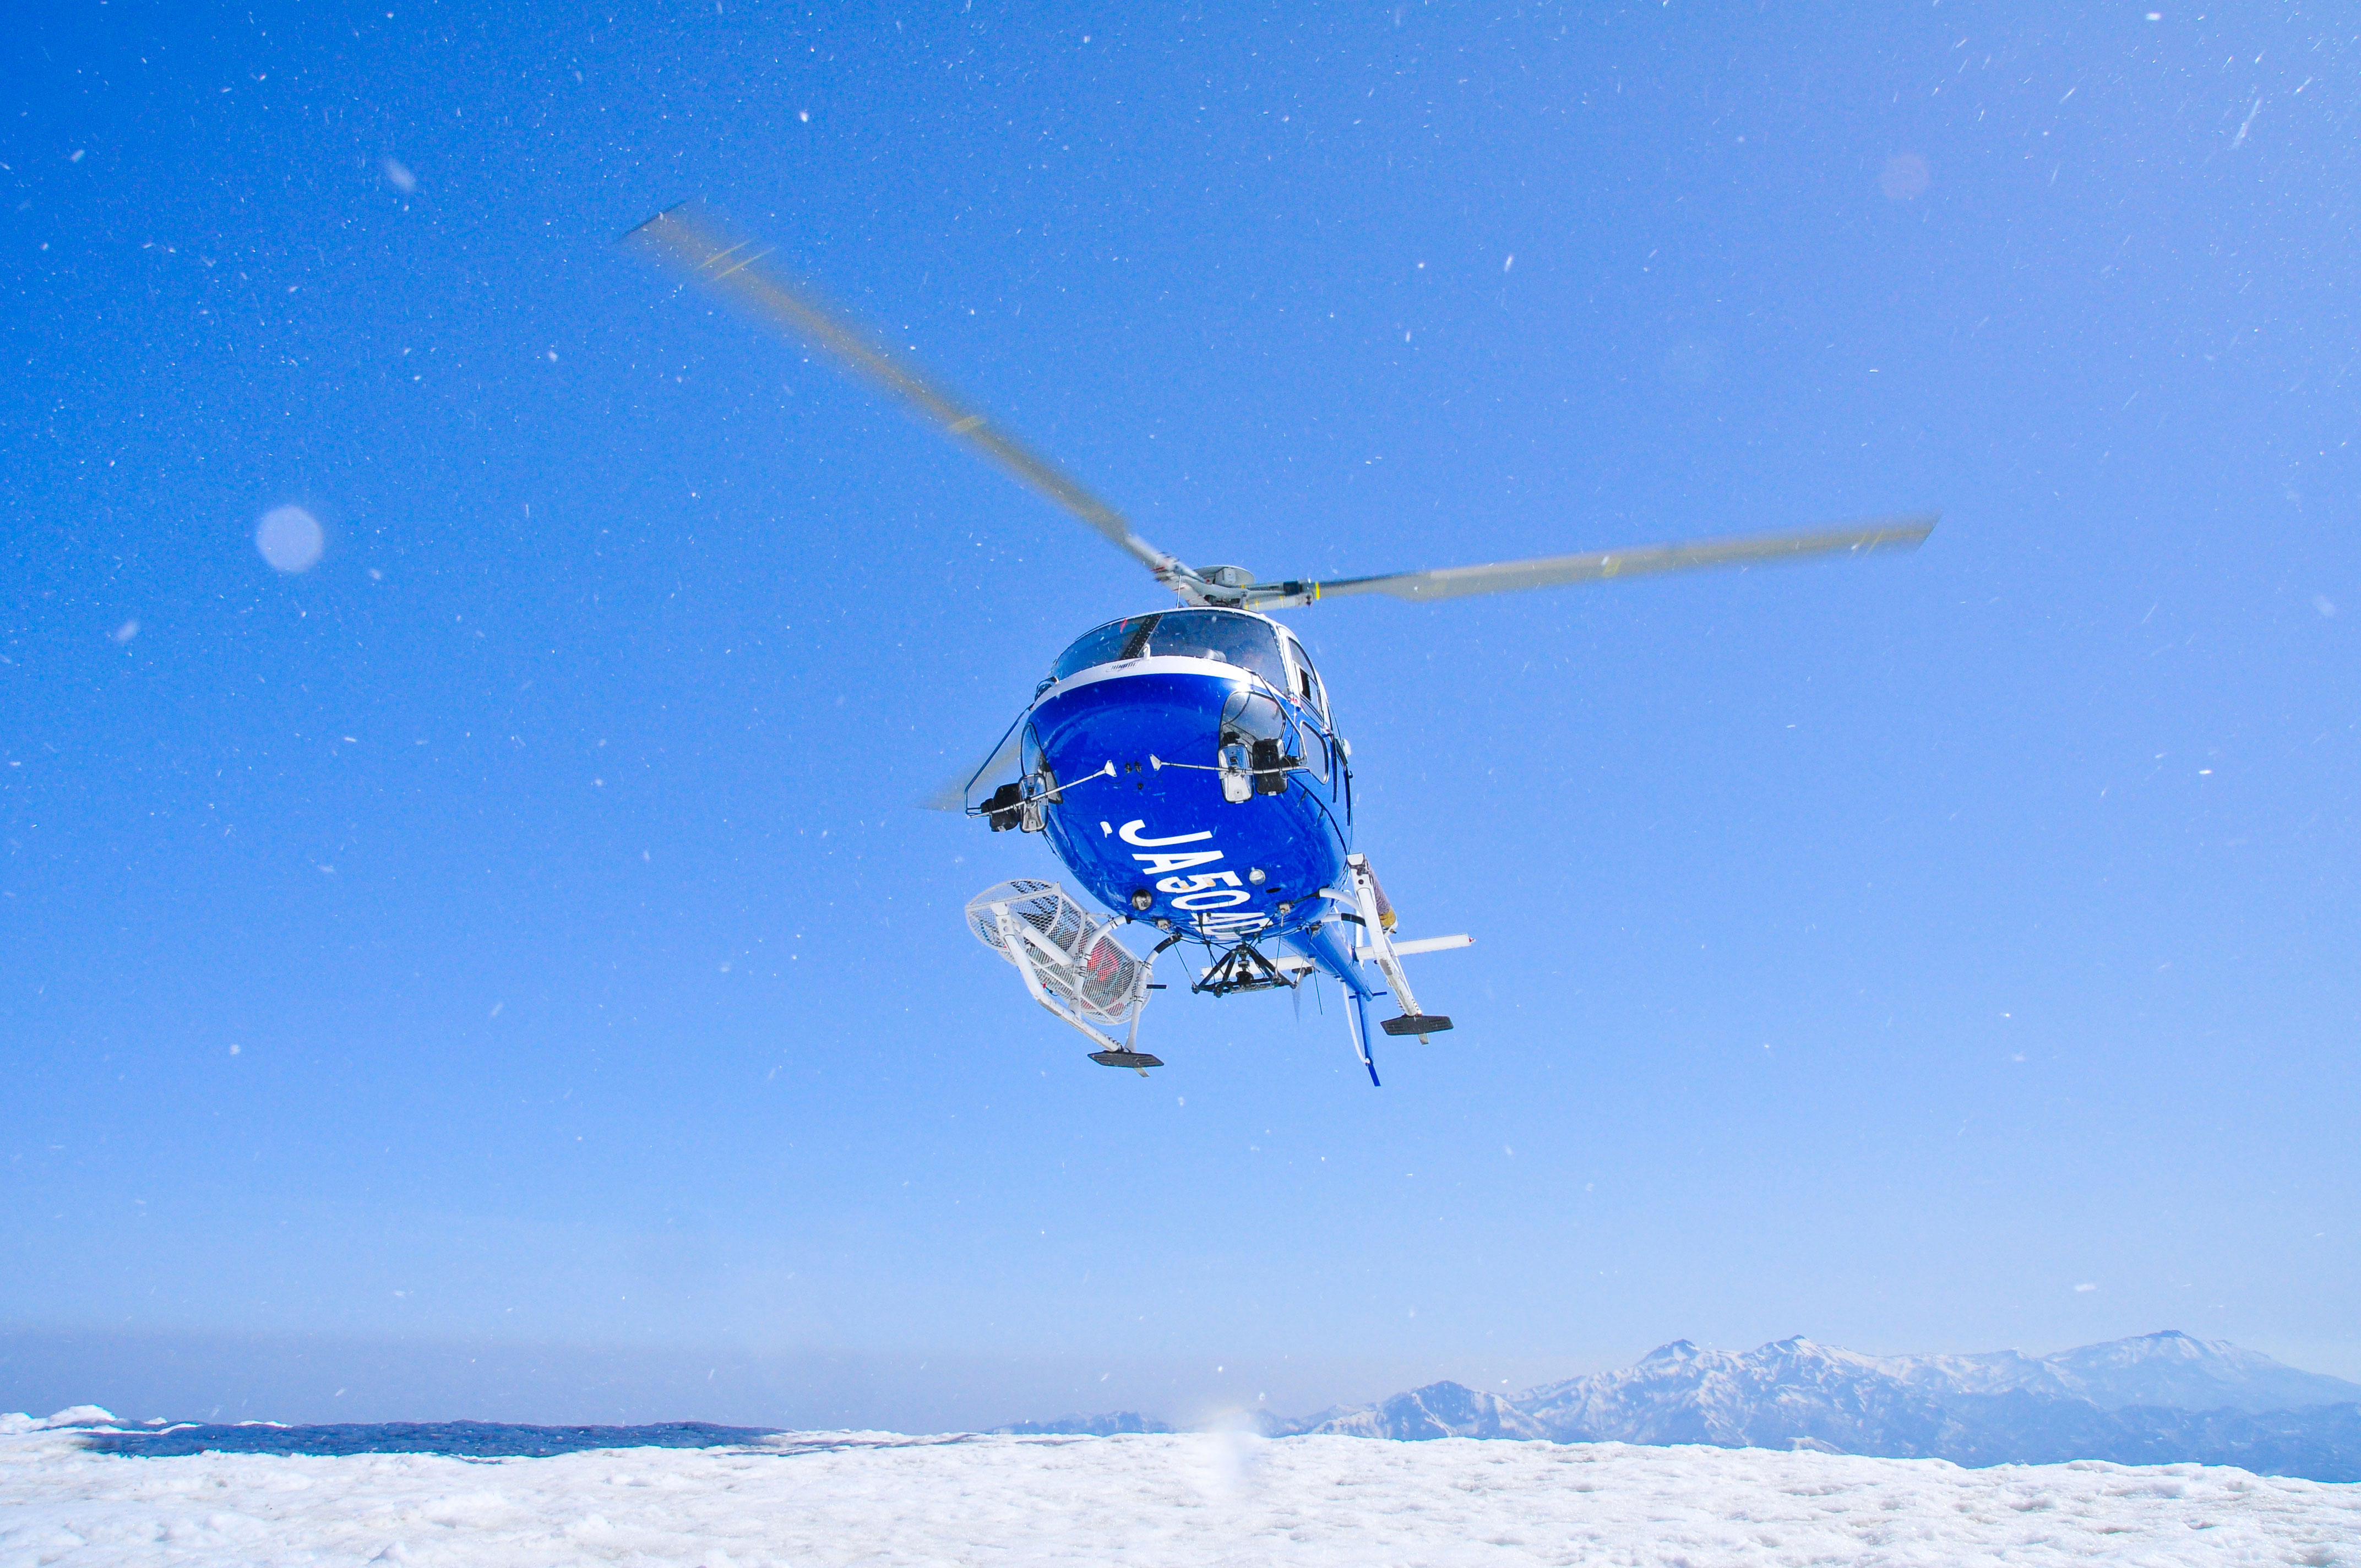 如果您立即乘坐直升机升至 2,200 米的高度，您会发现壮丽的景色！ !!